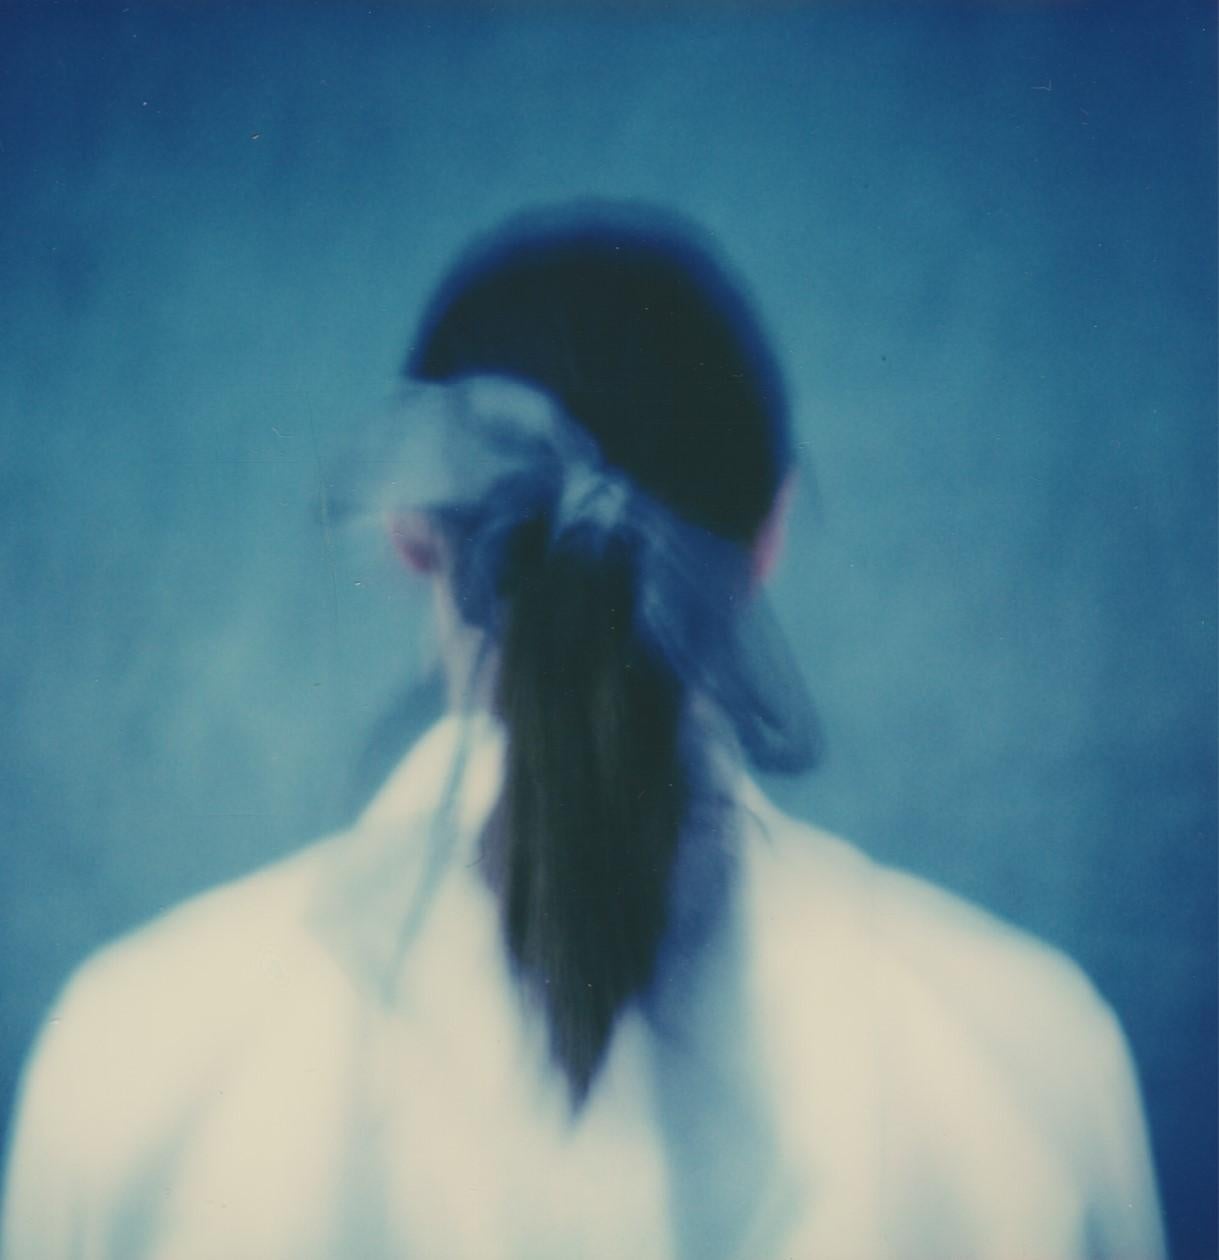 Ribbon bleu - Impression photographique de film encadrée d'un portrait de style cyanotype